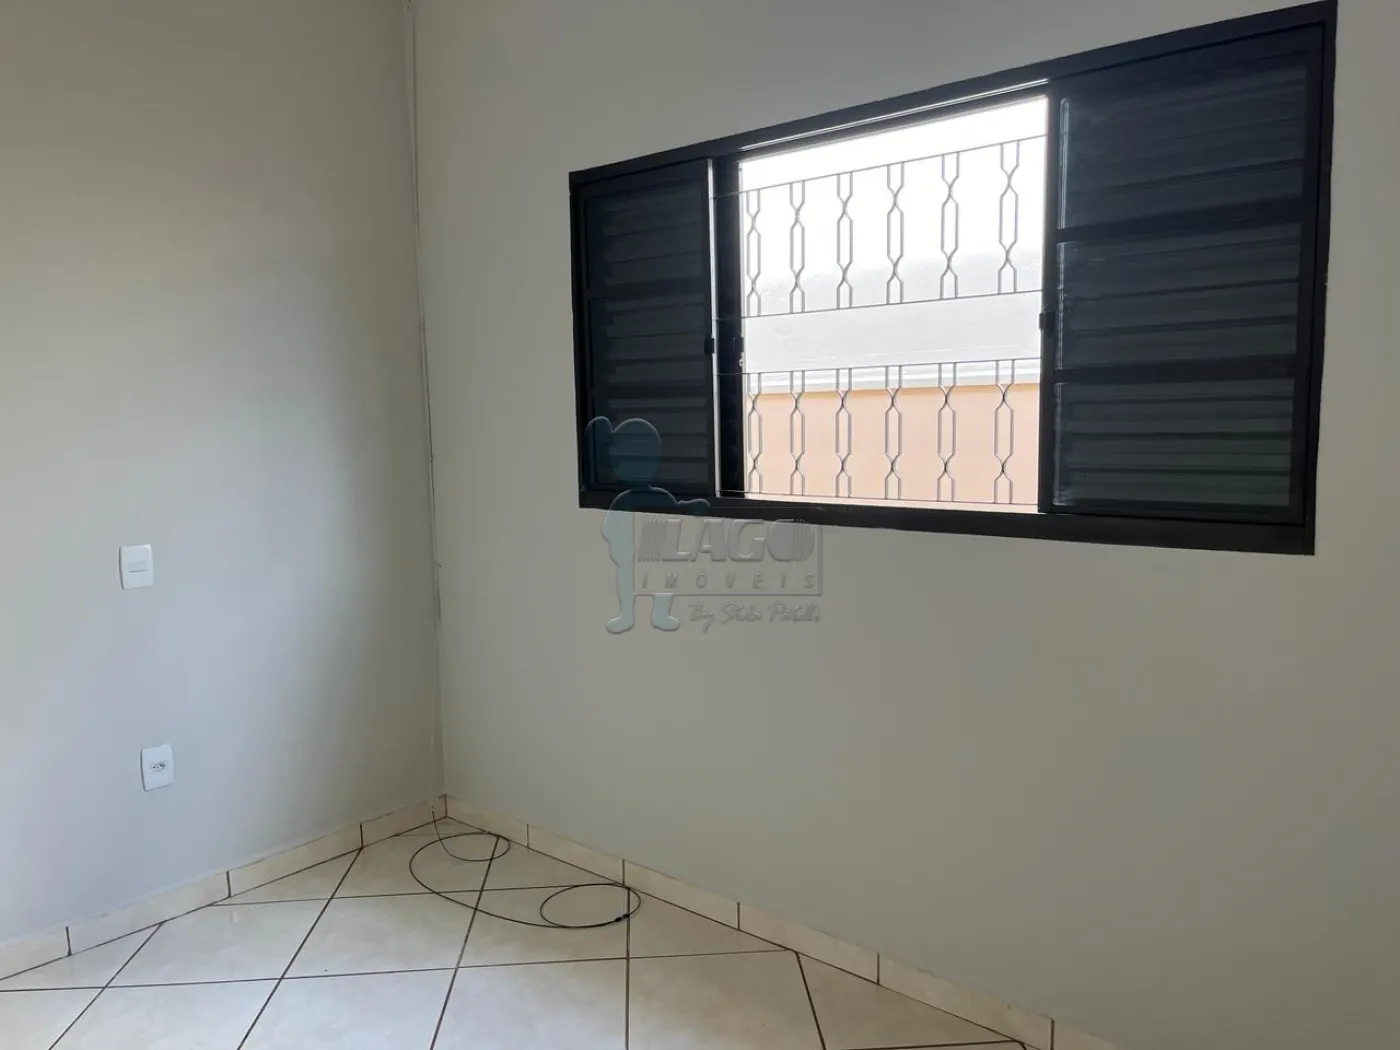 Comprar Casas / Padrão em Ribeirão Preto R$ 370.000,00 - Foto 7